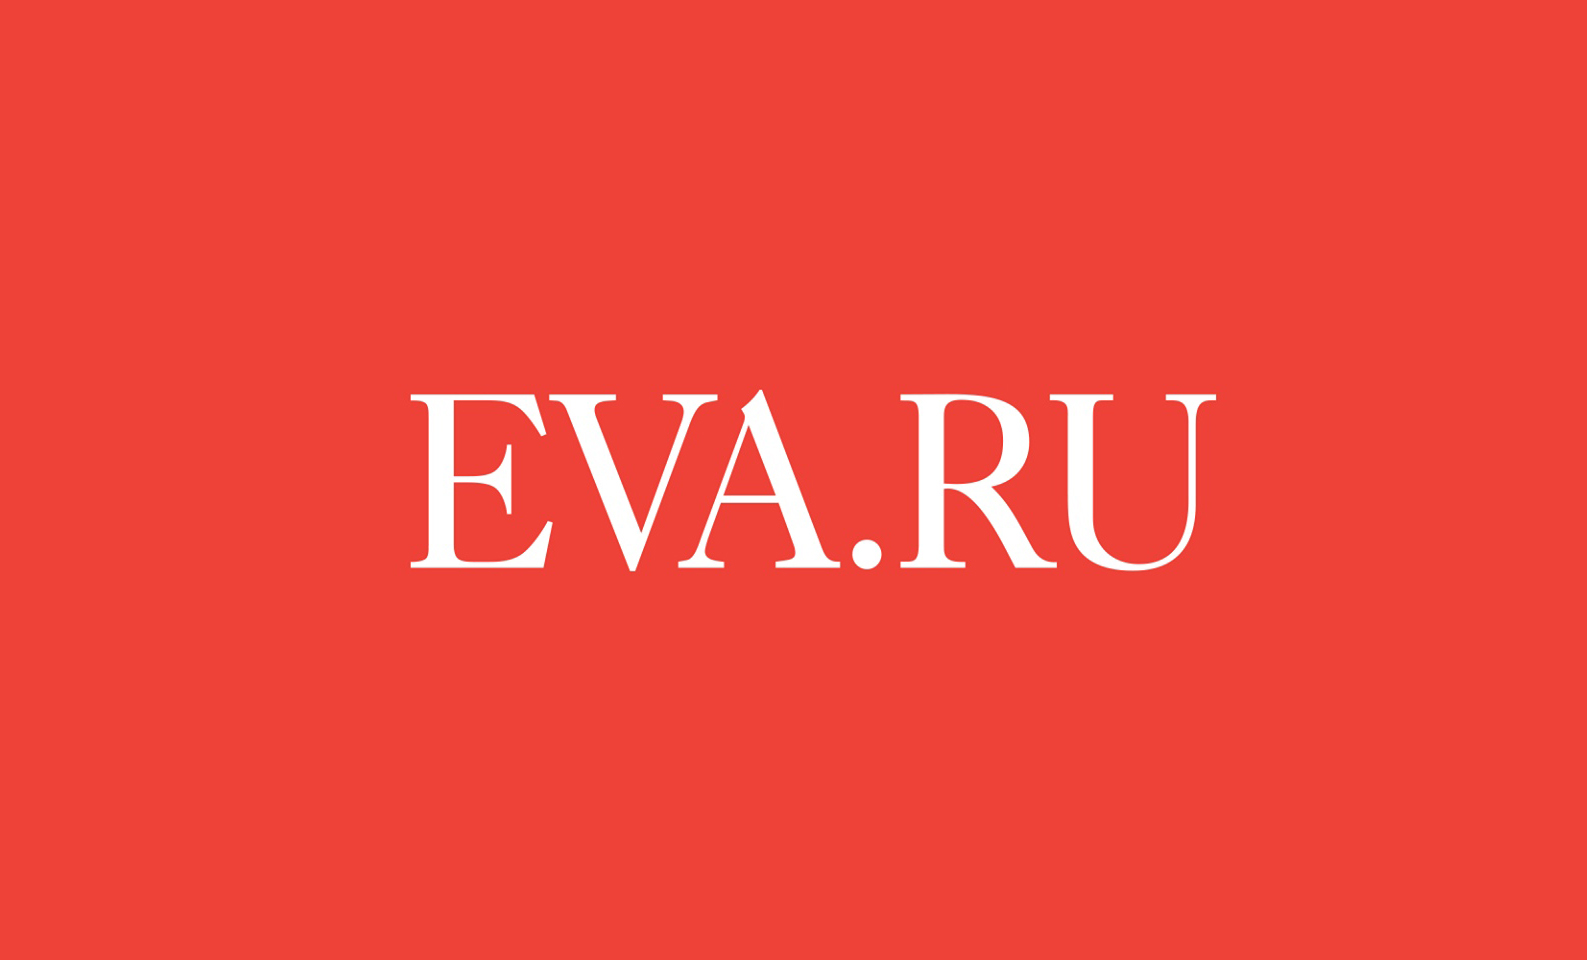 Https edu eva. Вару на аву. Eva.ru логотип.